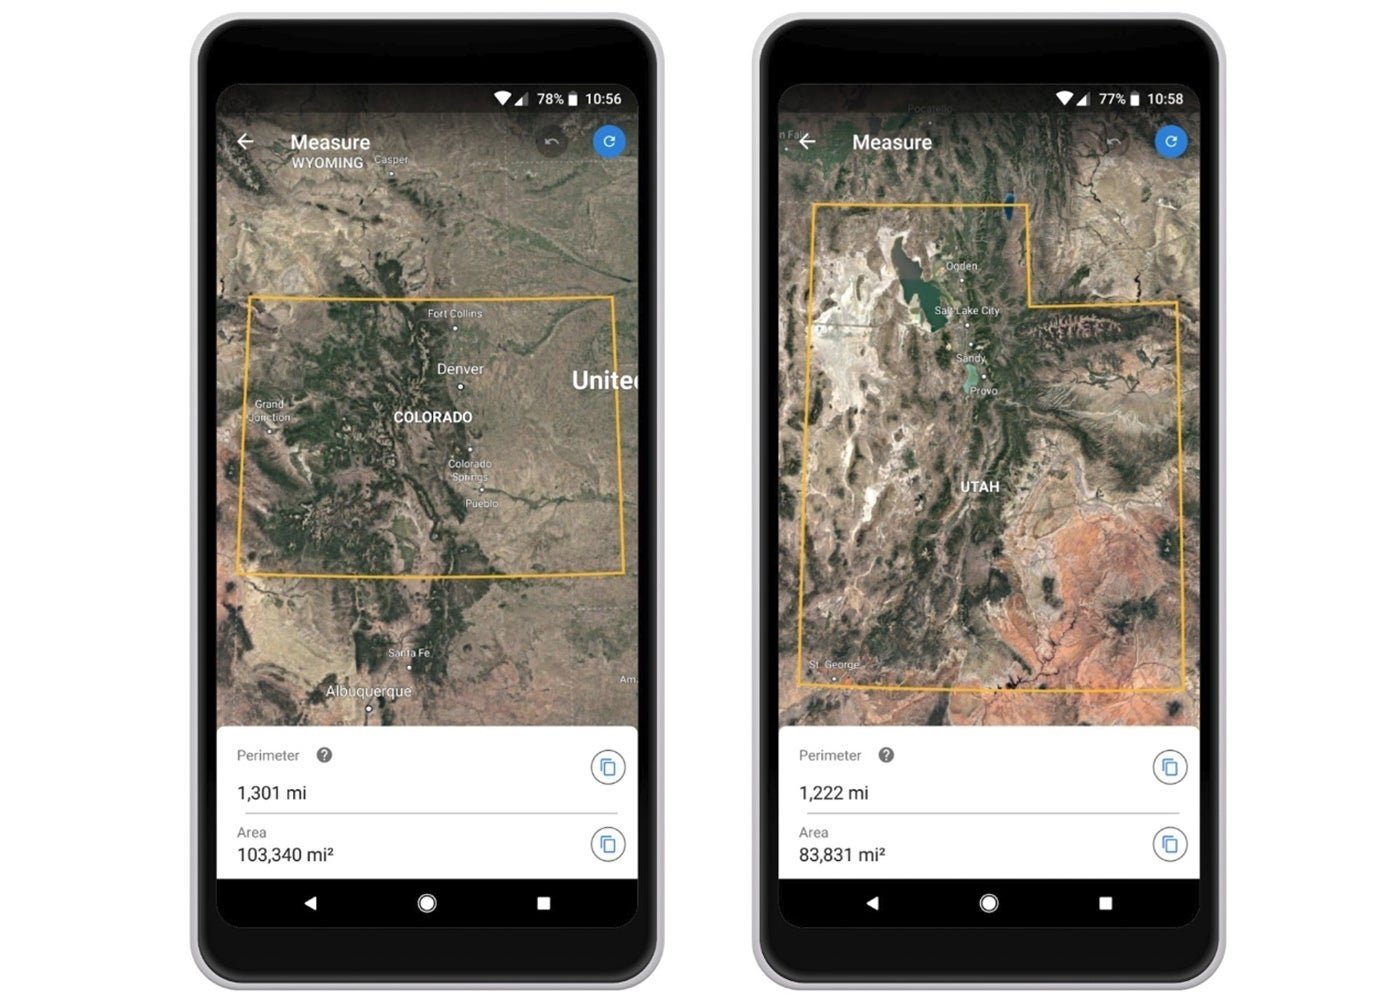 Así puedes medir distancias y áreas fácilmente con Google Earth en Android